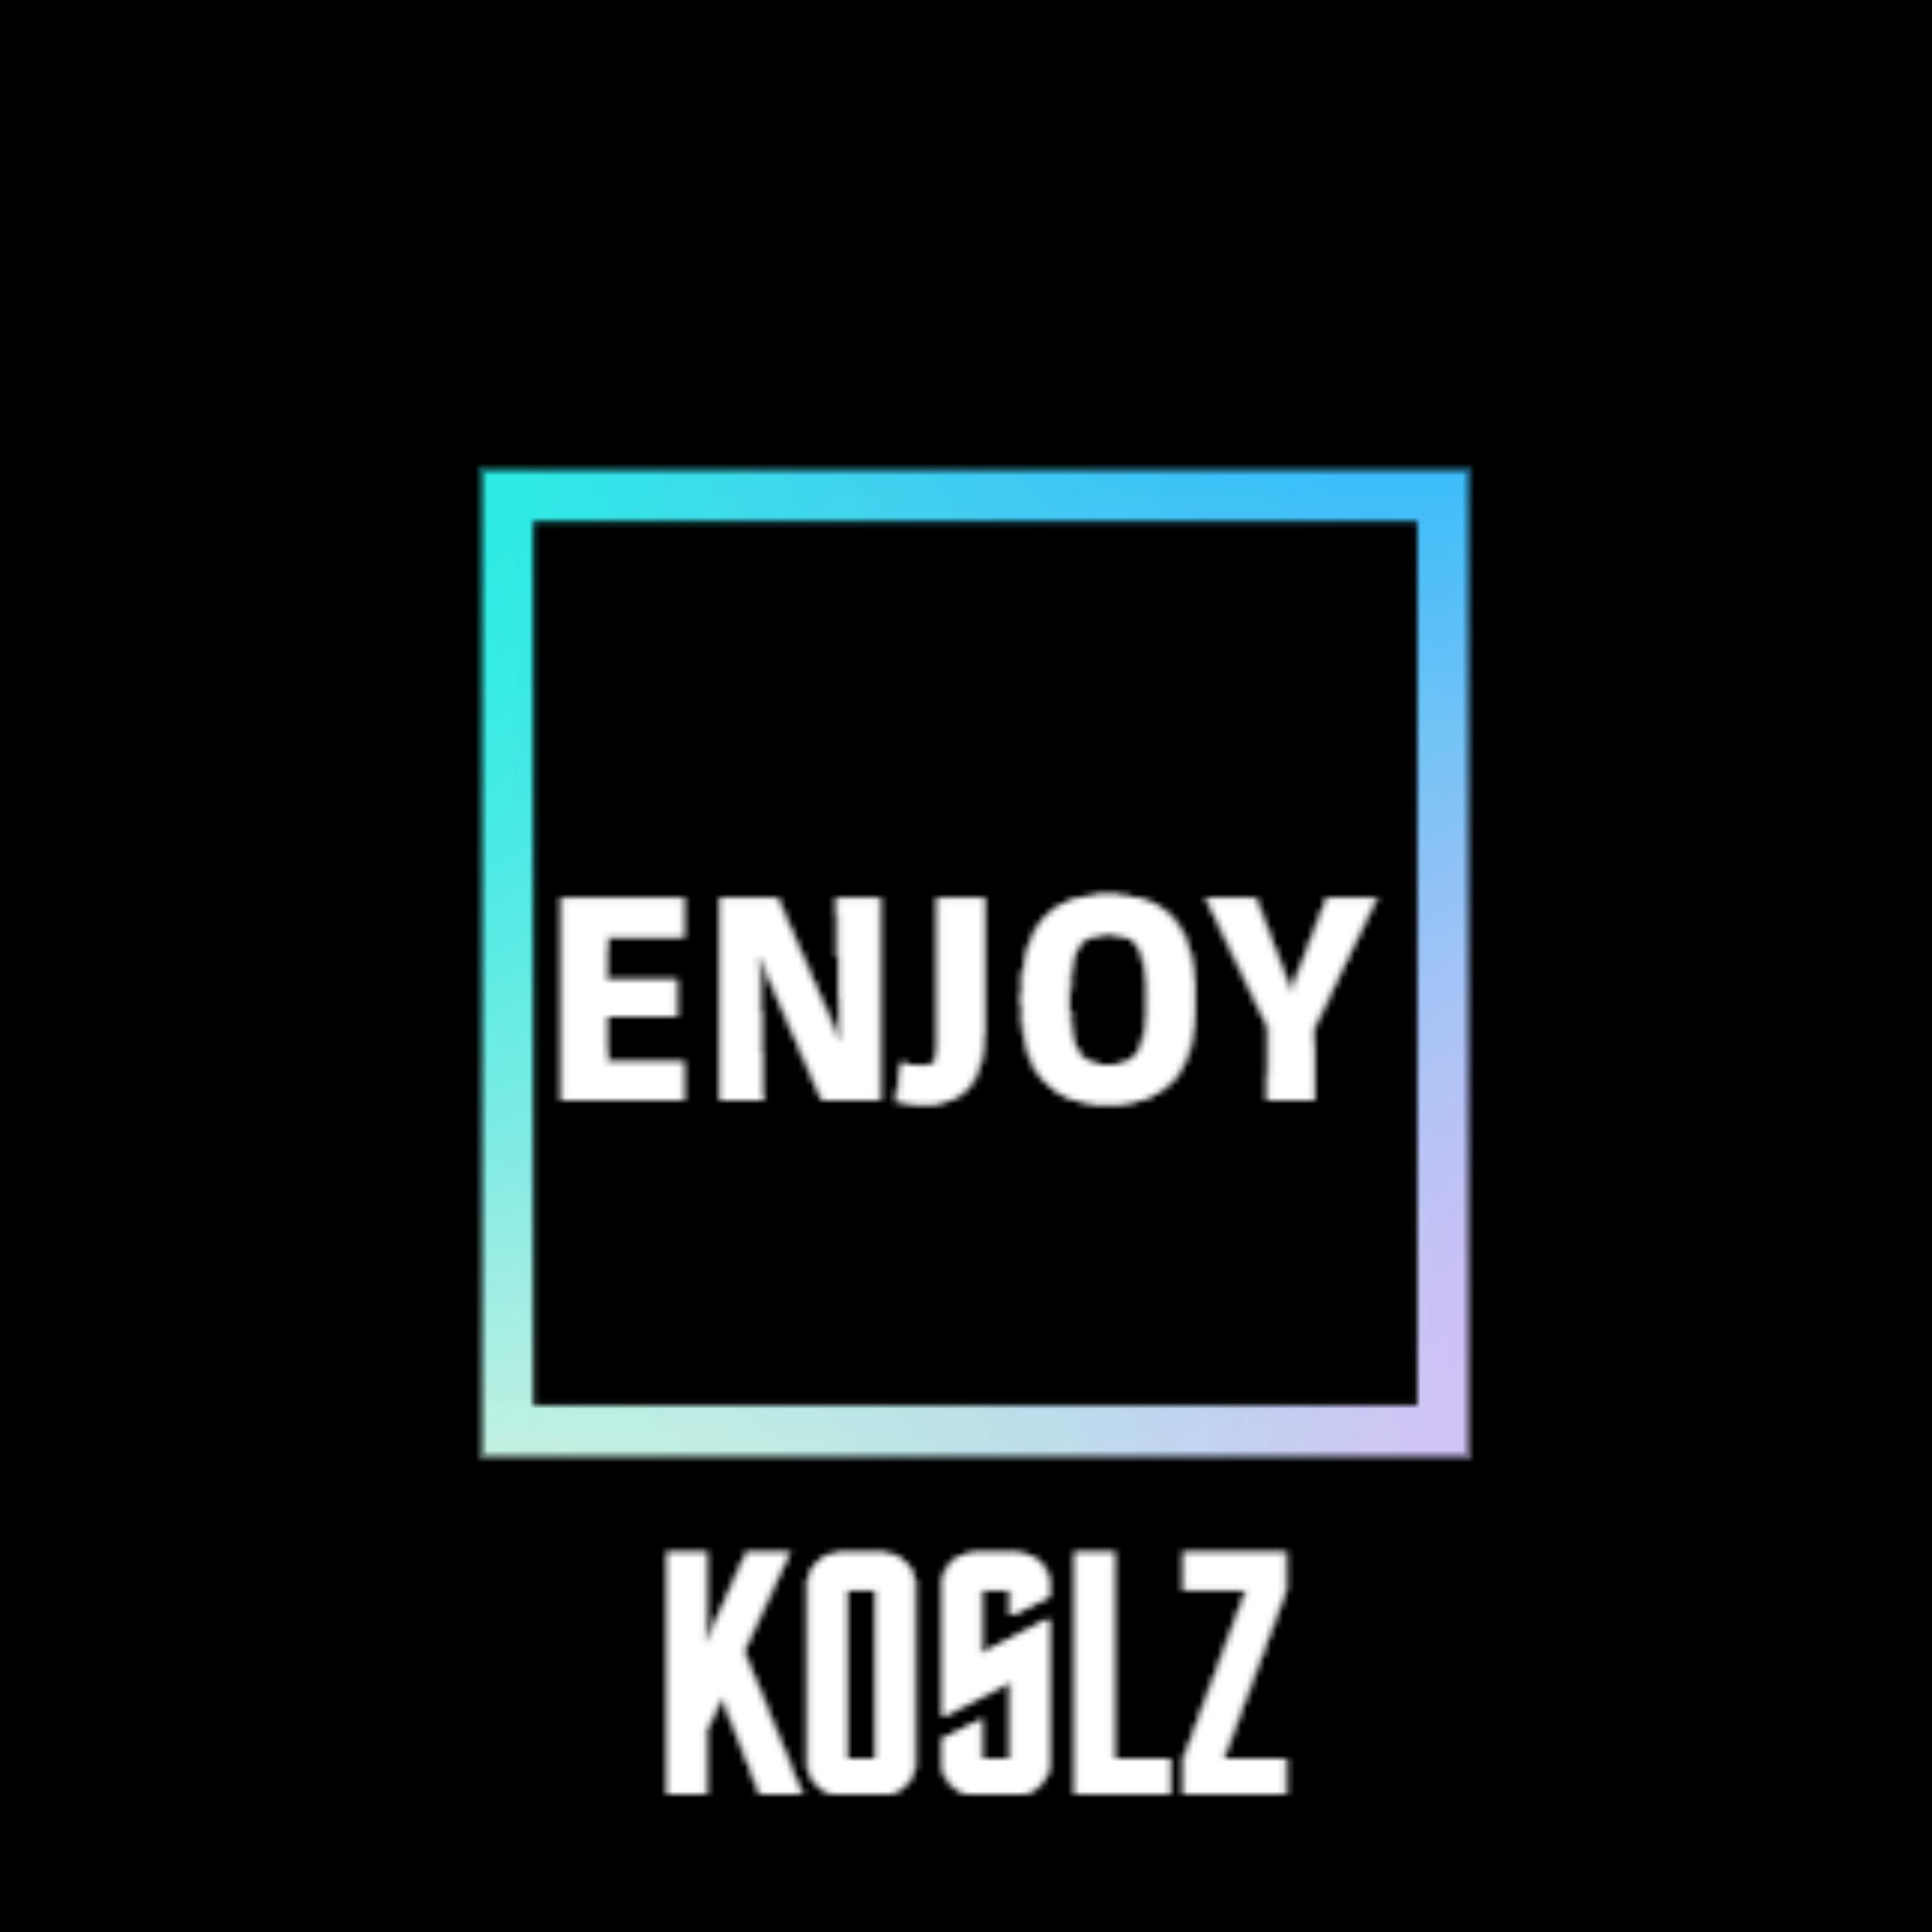 koslz - Enjoy